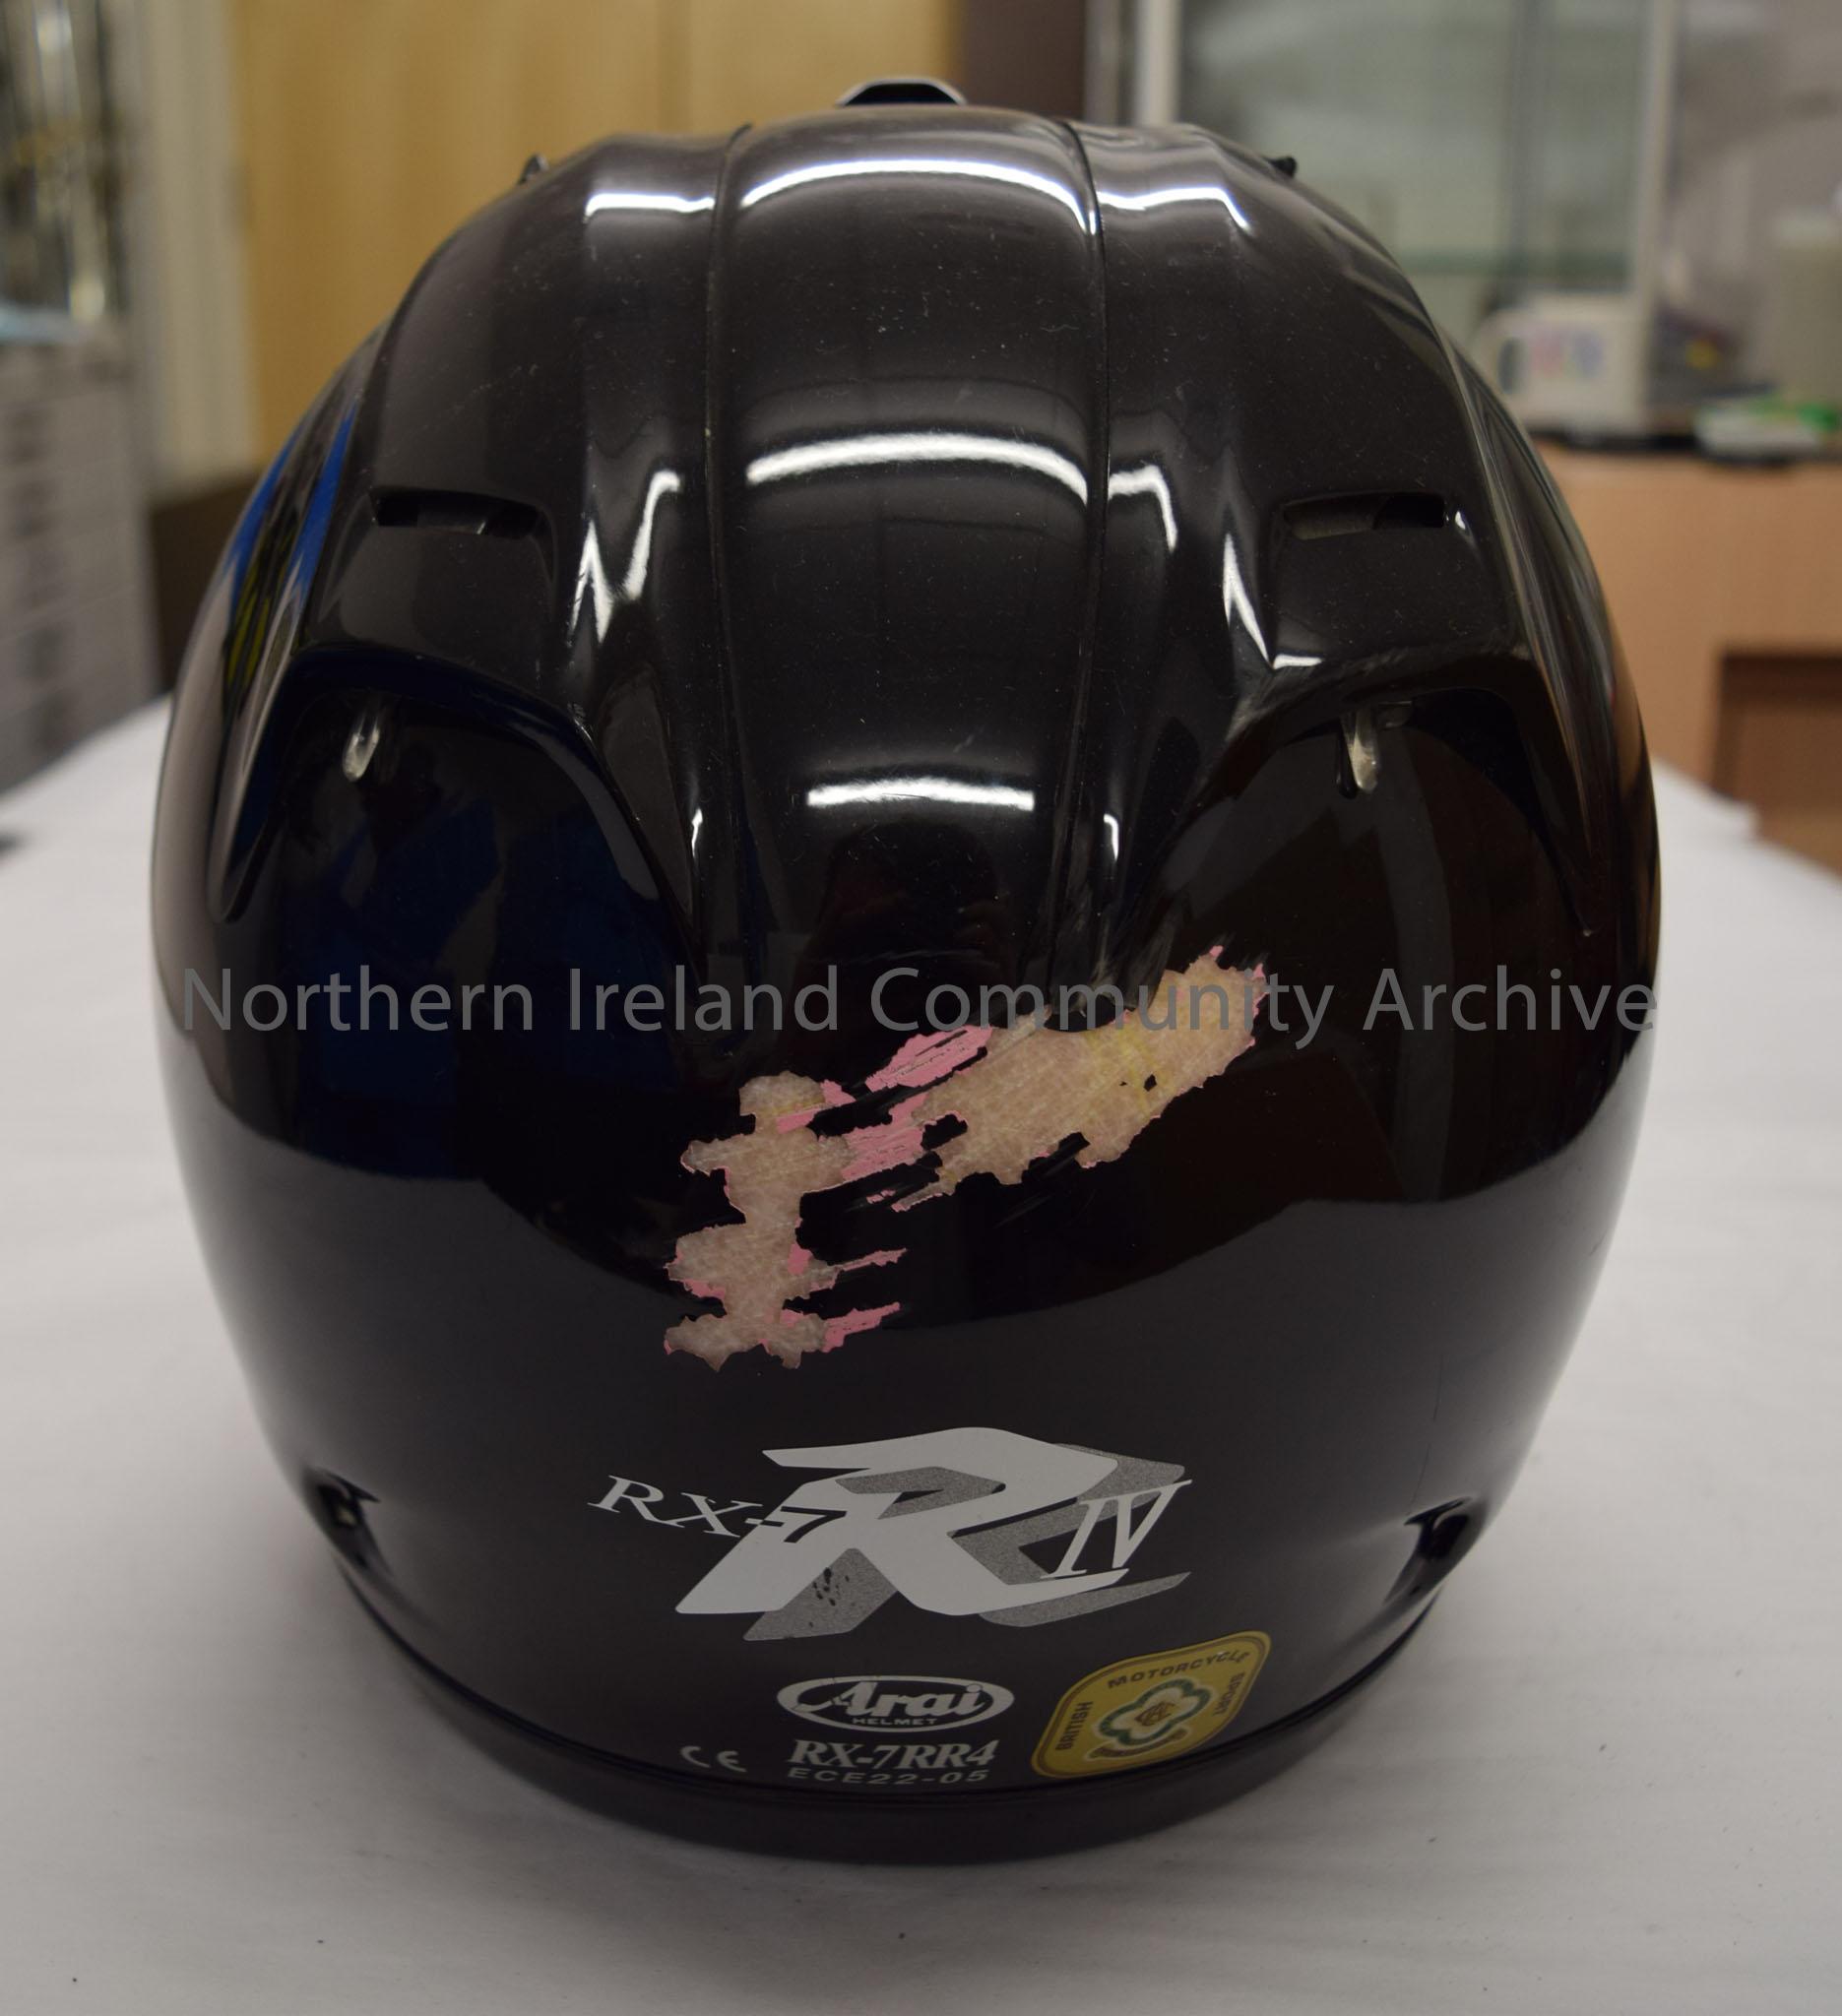 Arai motorcycle helmet belonging to Gary Jackson. Black helmet with yellow visor hinge covers. – 2016.37 (4)